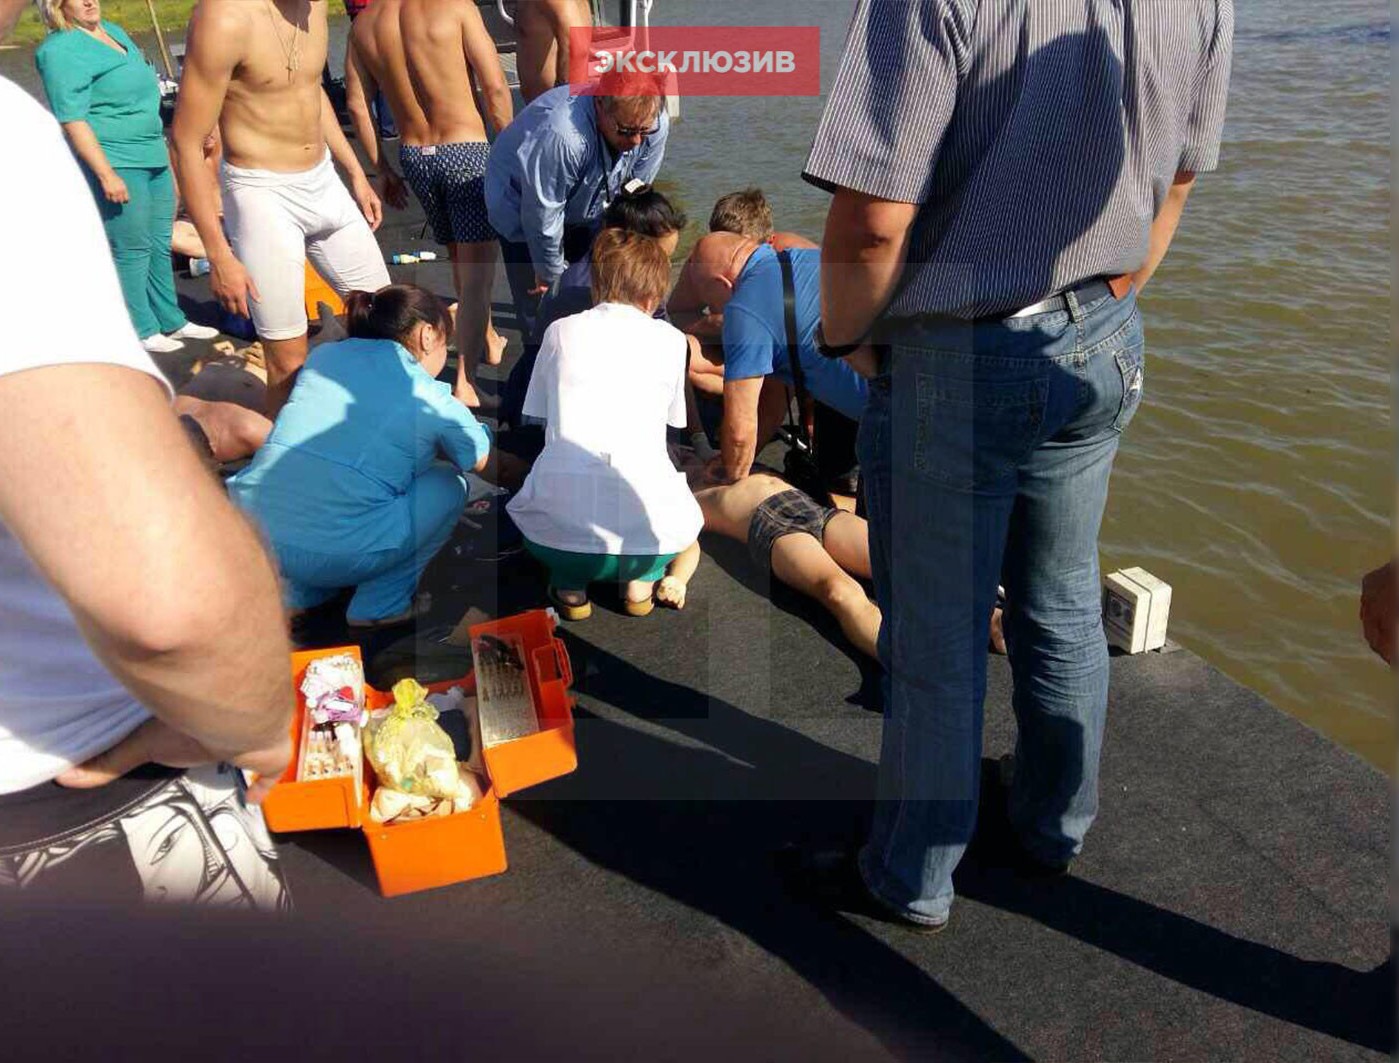 Утонул отец. Мальчик спасатель. В Батьках утонул мужчина. ЧП В Иркутске на воде.